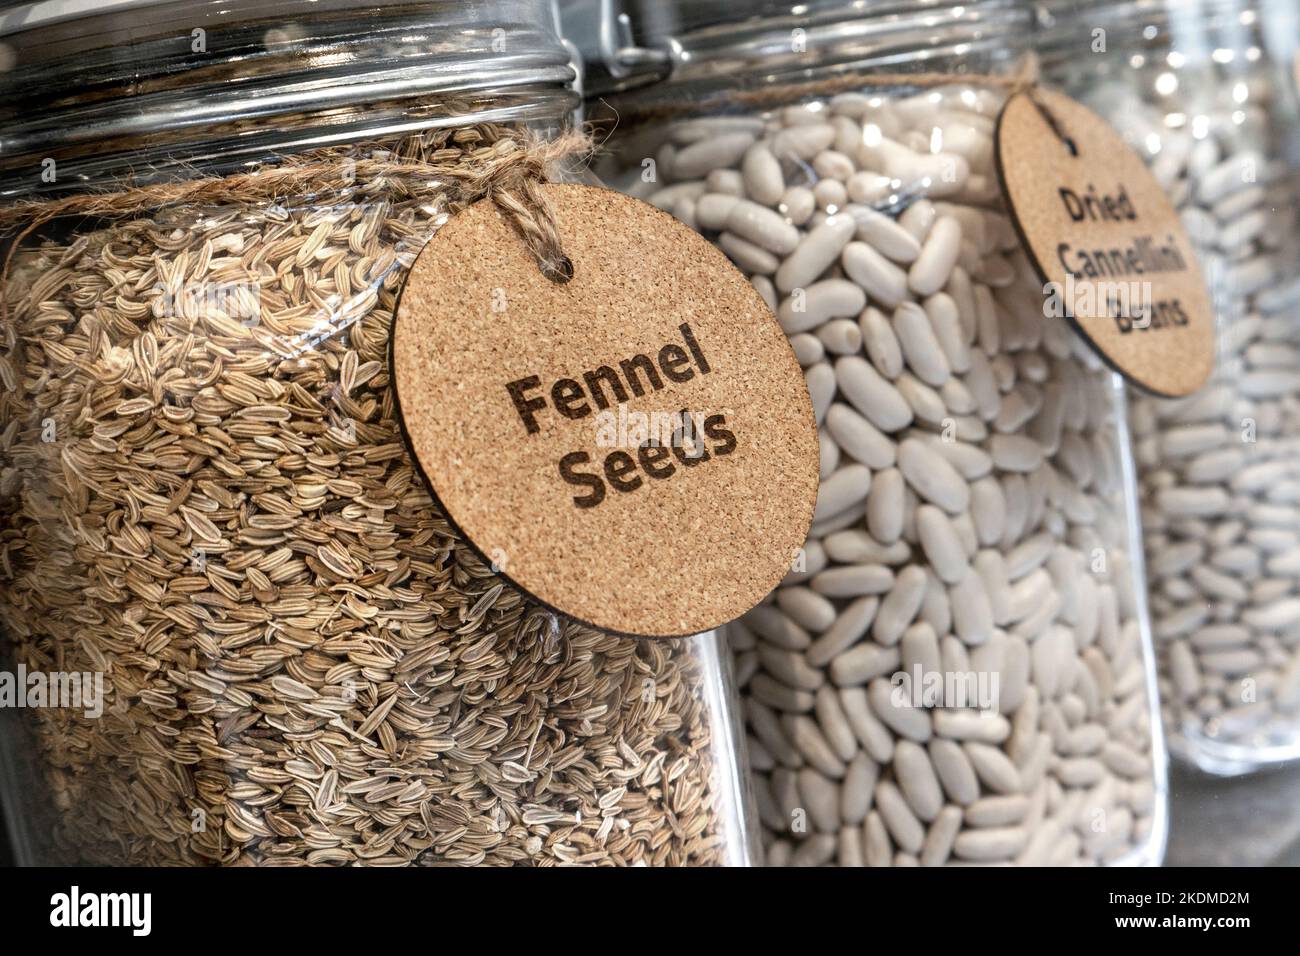 Fenchel Samen in einem Glas, aromatische Samen, die erhebliche gesundheitliche Vorteile mit Geschmack und Aroma bieten. Fenchelsamen aus Pflanzenblüten. Stockfoto